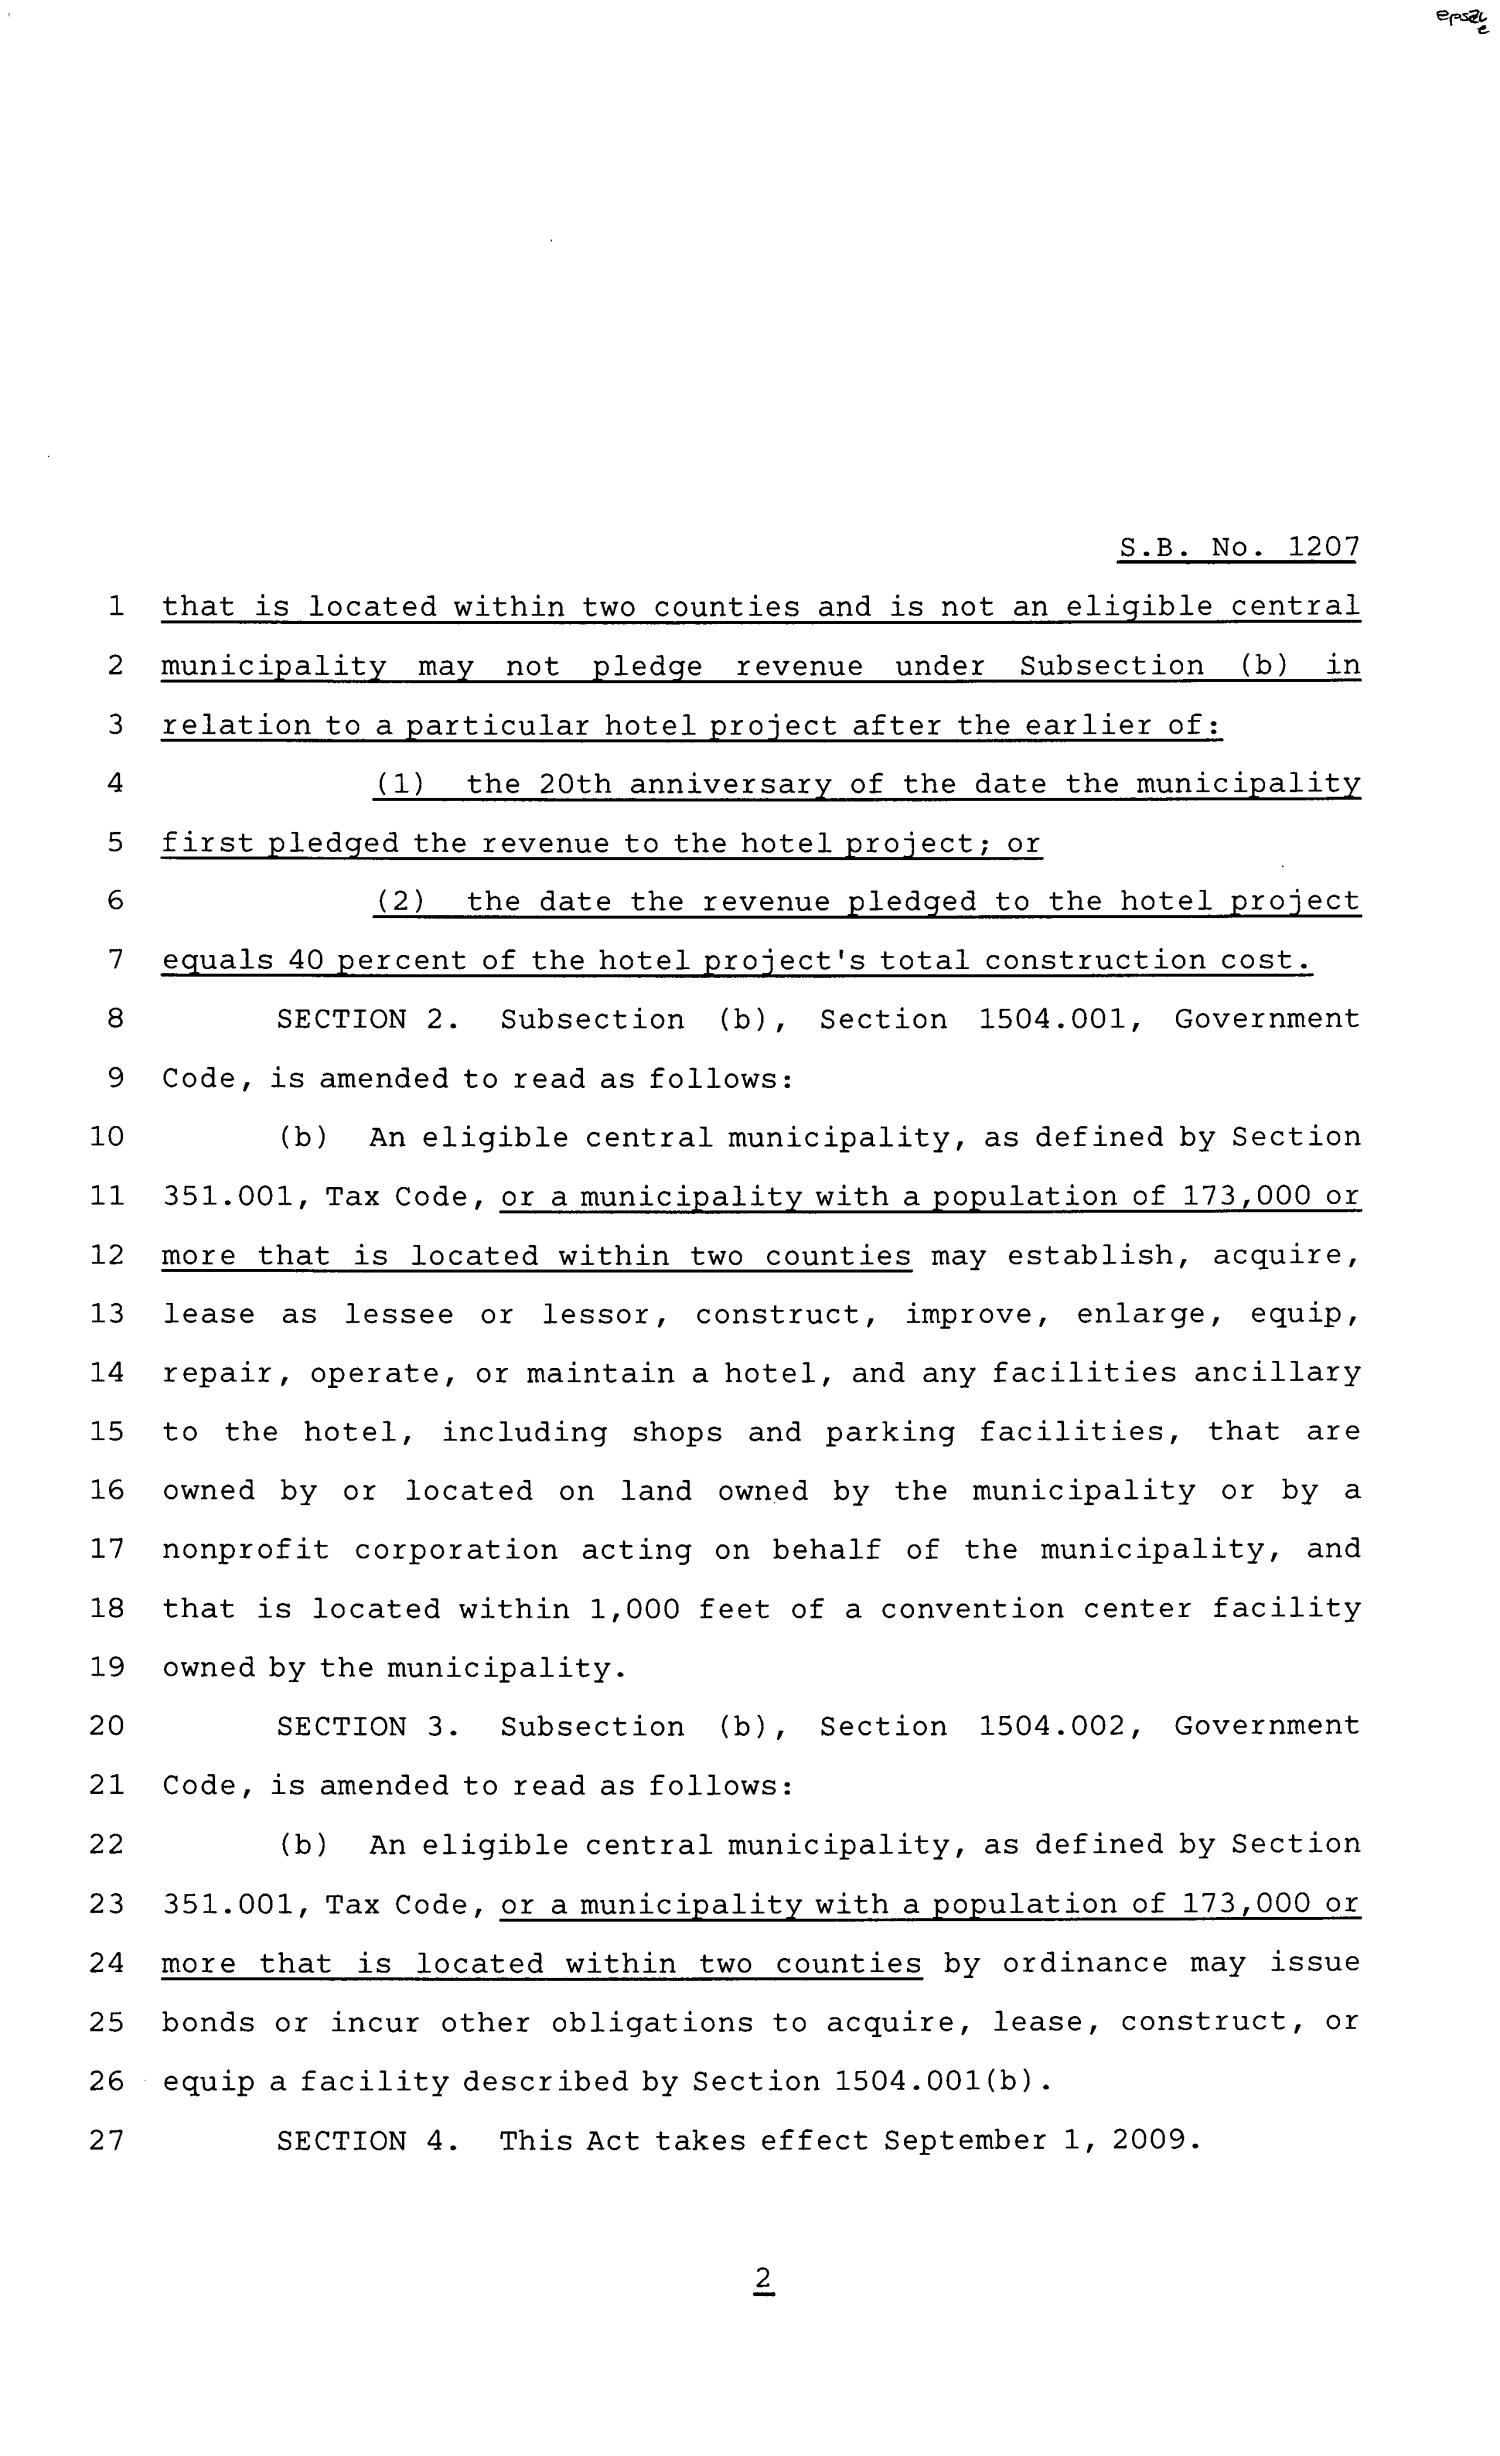 81st Texas Legislature, Senate Bill 1207, Chapter 519
                                                
                                                    [Sequence #]: 2 of 3
                                                